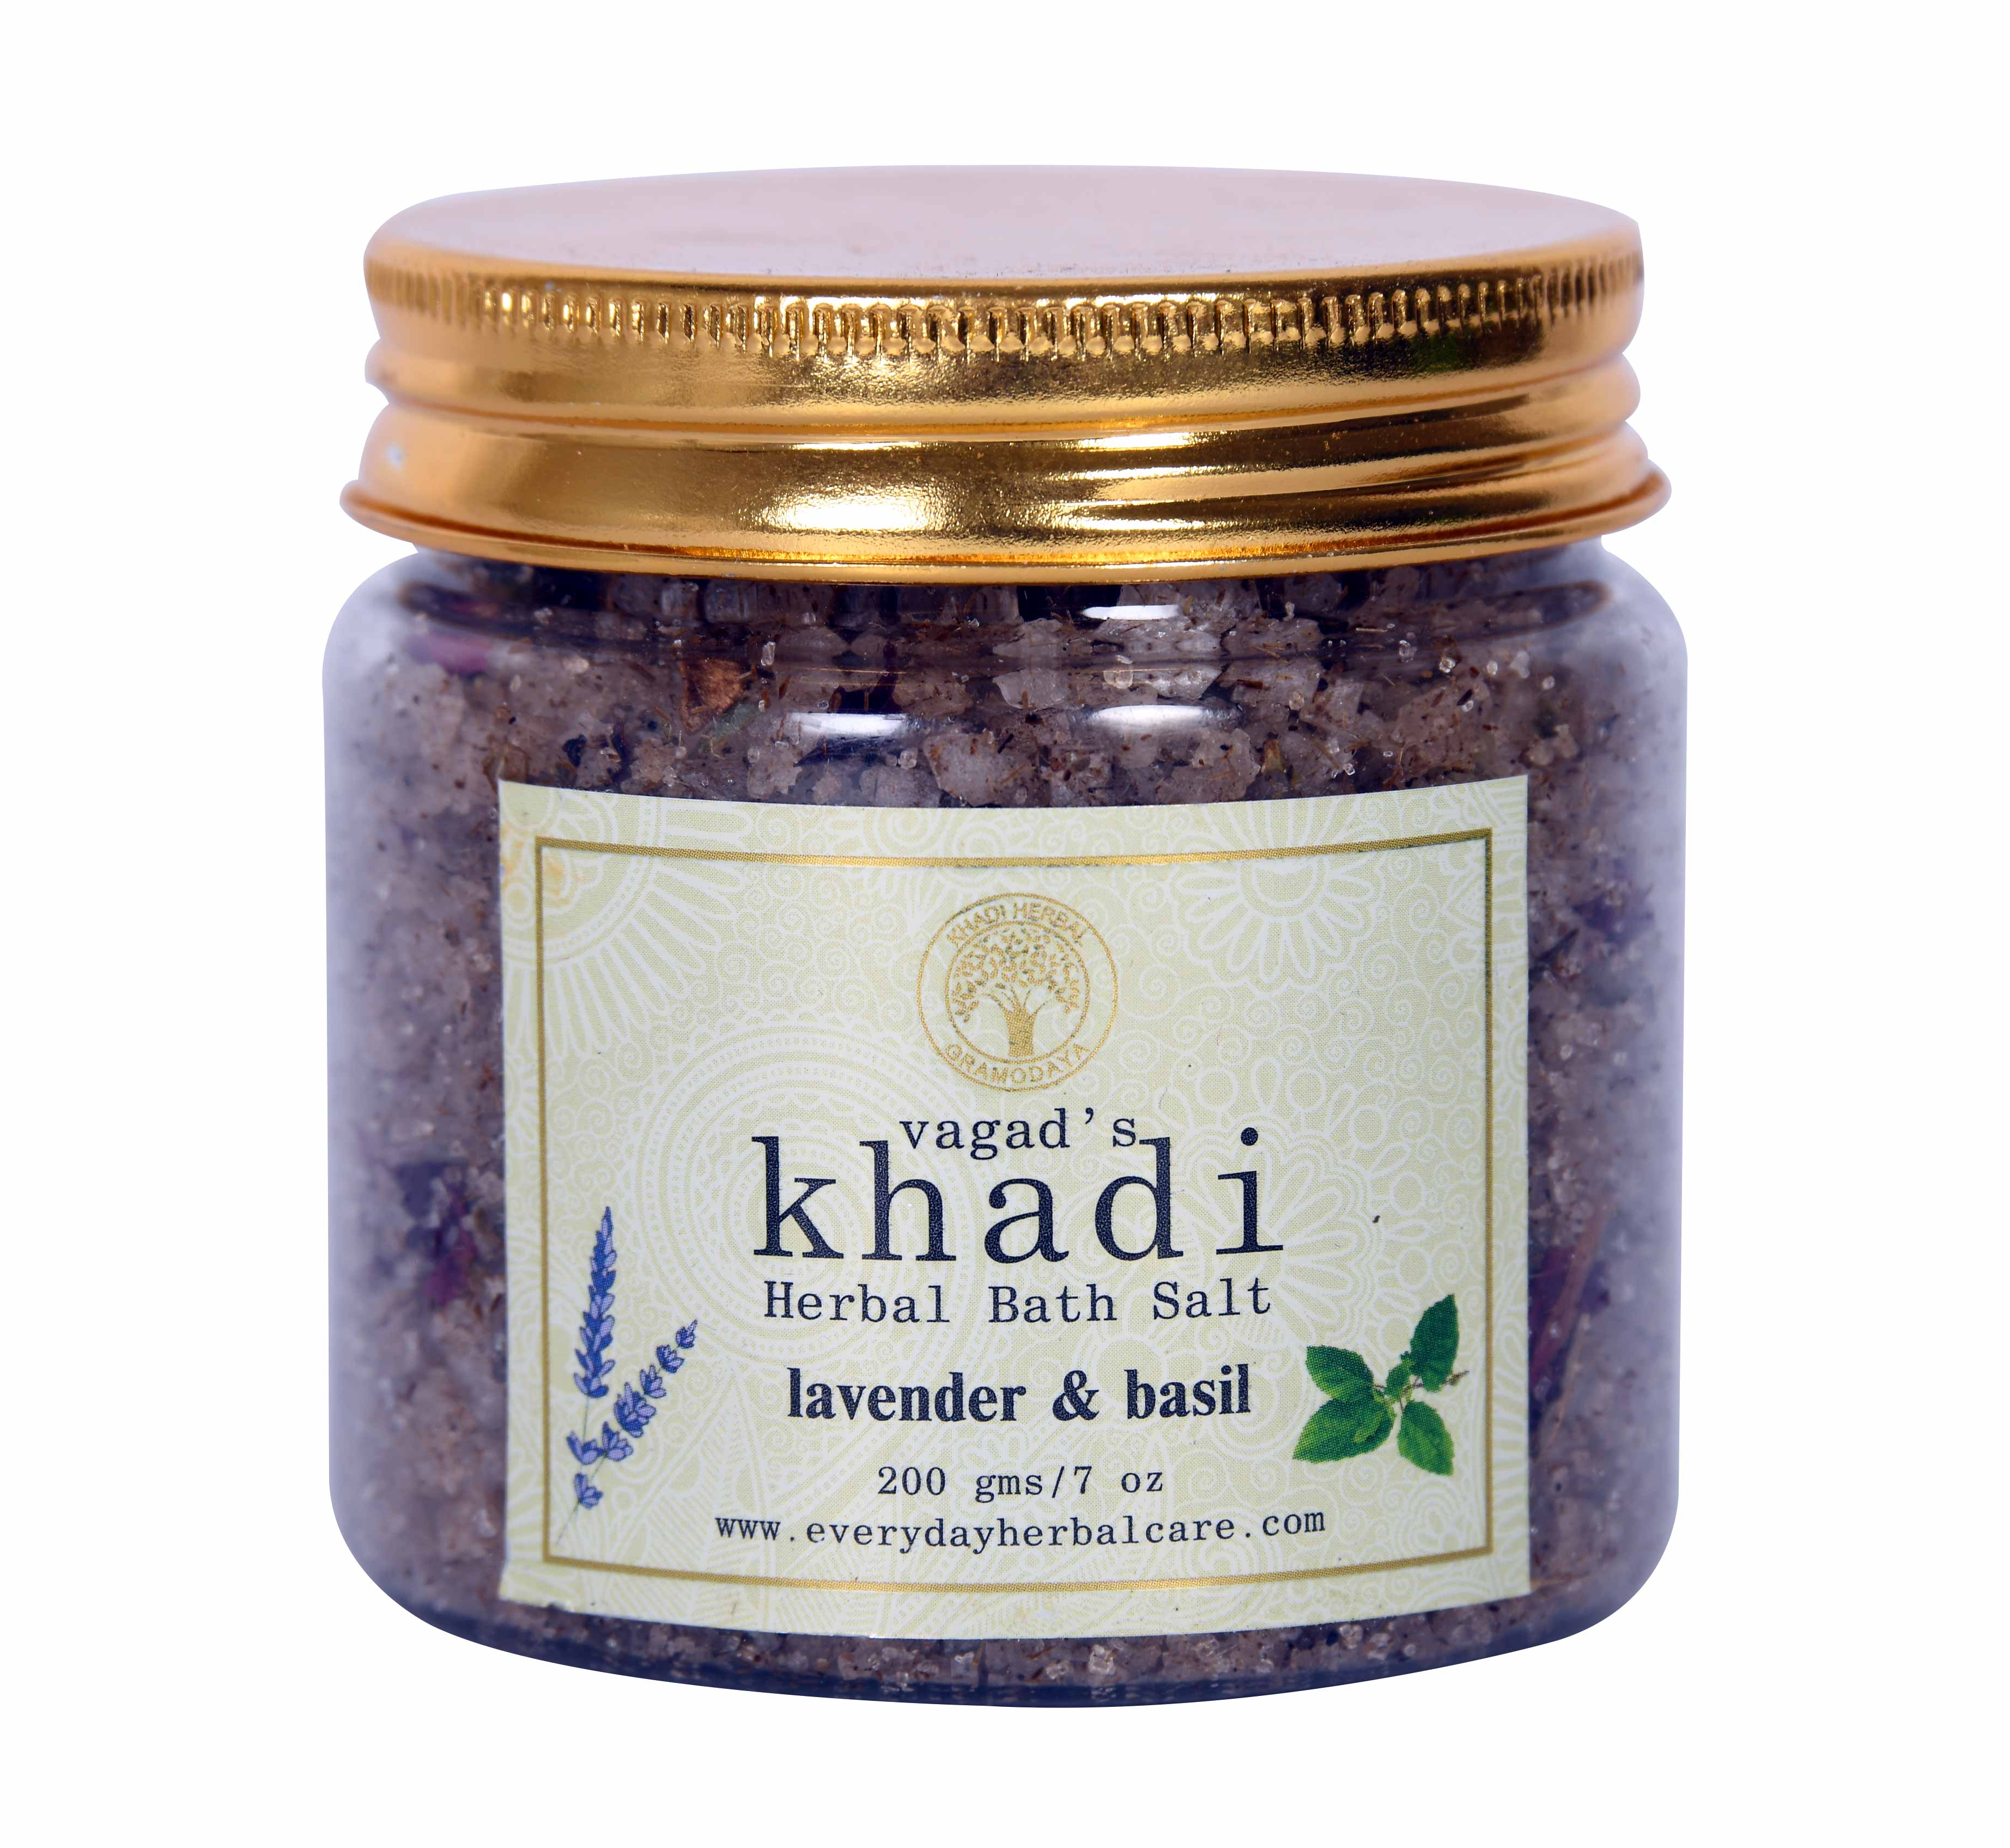 Vagad's Khadi Lavender Basil Herbal Bath Salt